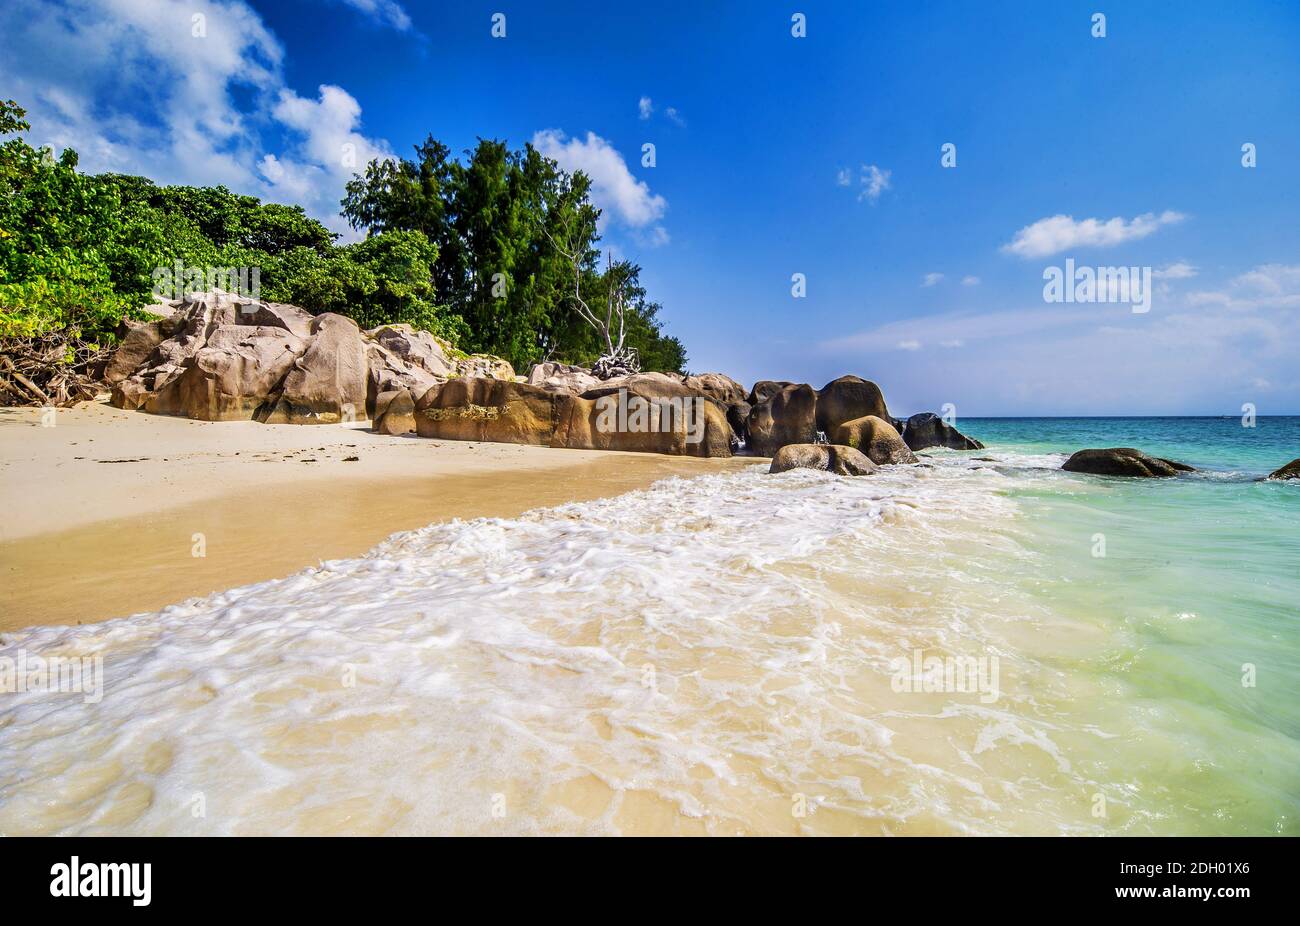 Die schöne Anse Kerlan in Praslin, Seychellen Inseln Stockfoto